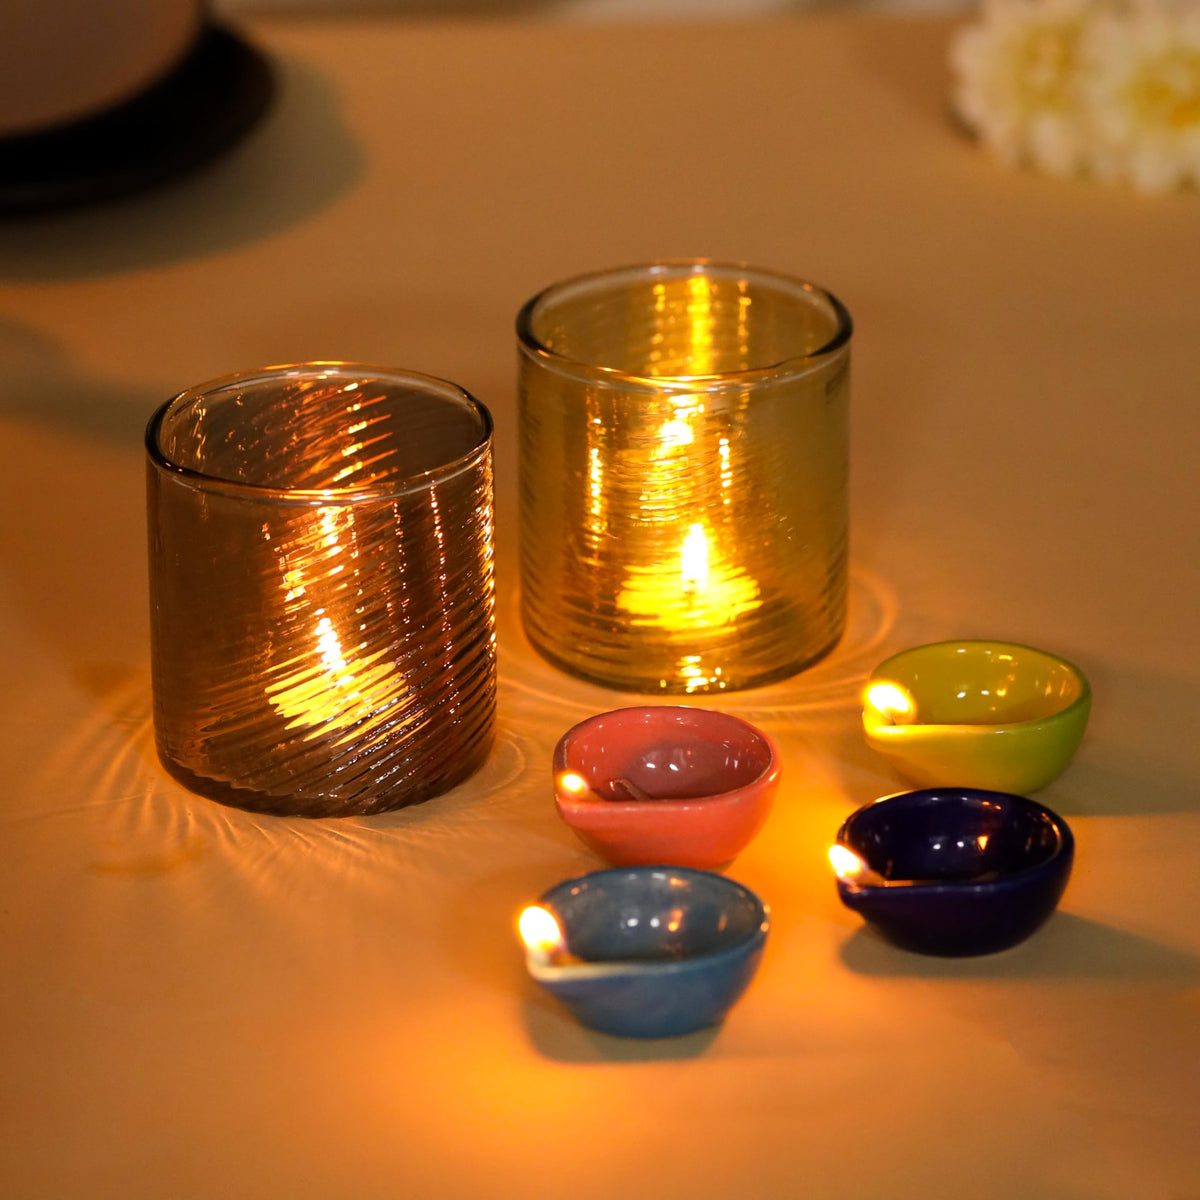 Gleevers Diwali Gift Pack |Diwali Gift Pack of 2 with Vase & Tea Light Holder | Diwali Gift Item (Tea Light Holder + 4 Ceramic Diya)